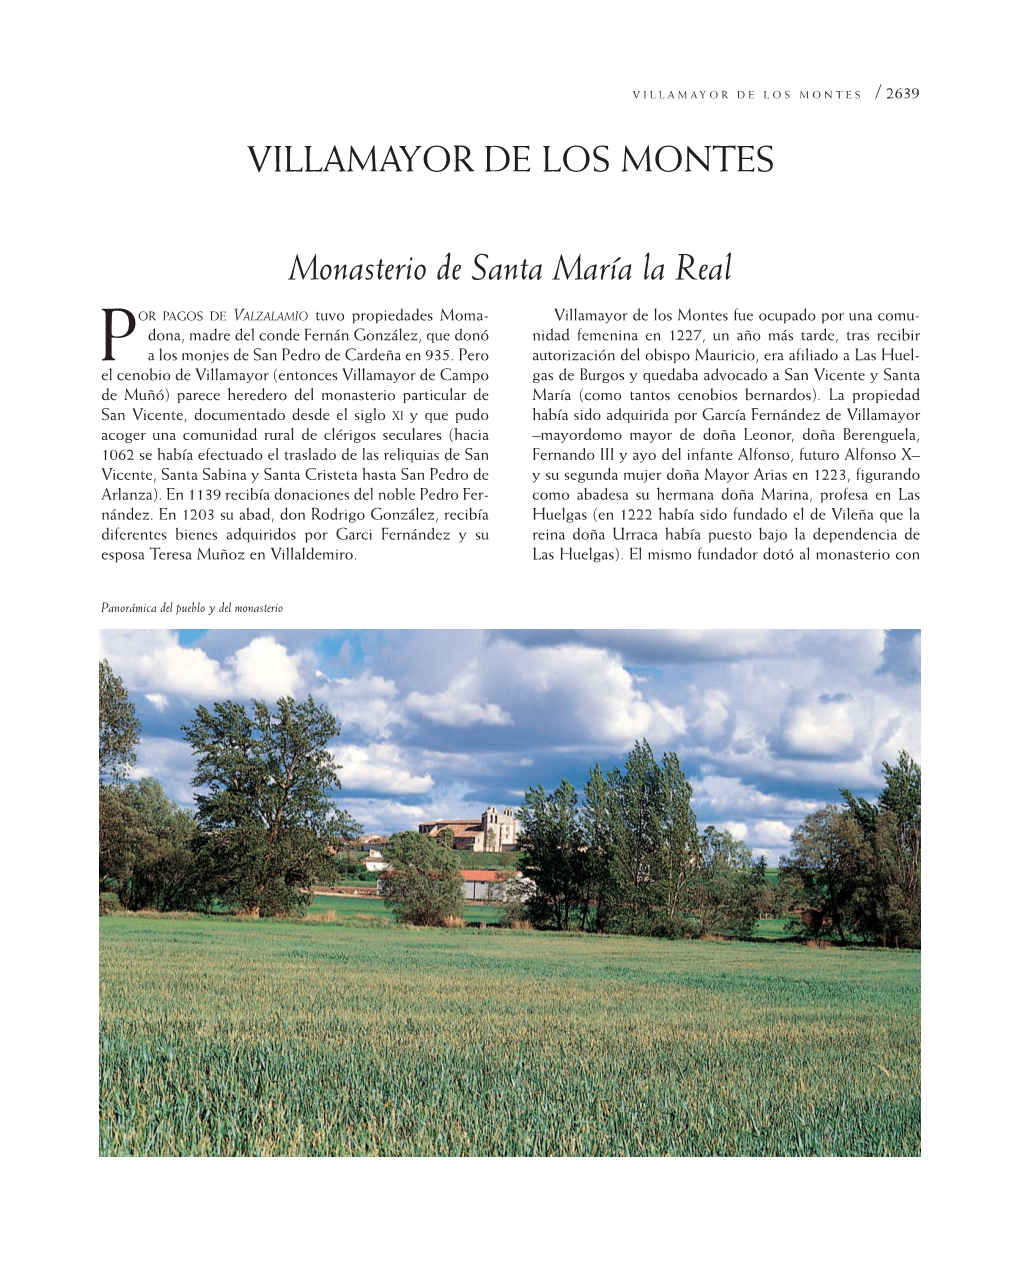 VILLAMAYOR DE LOS MONTES Monasterio De Santa María La Real